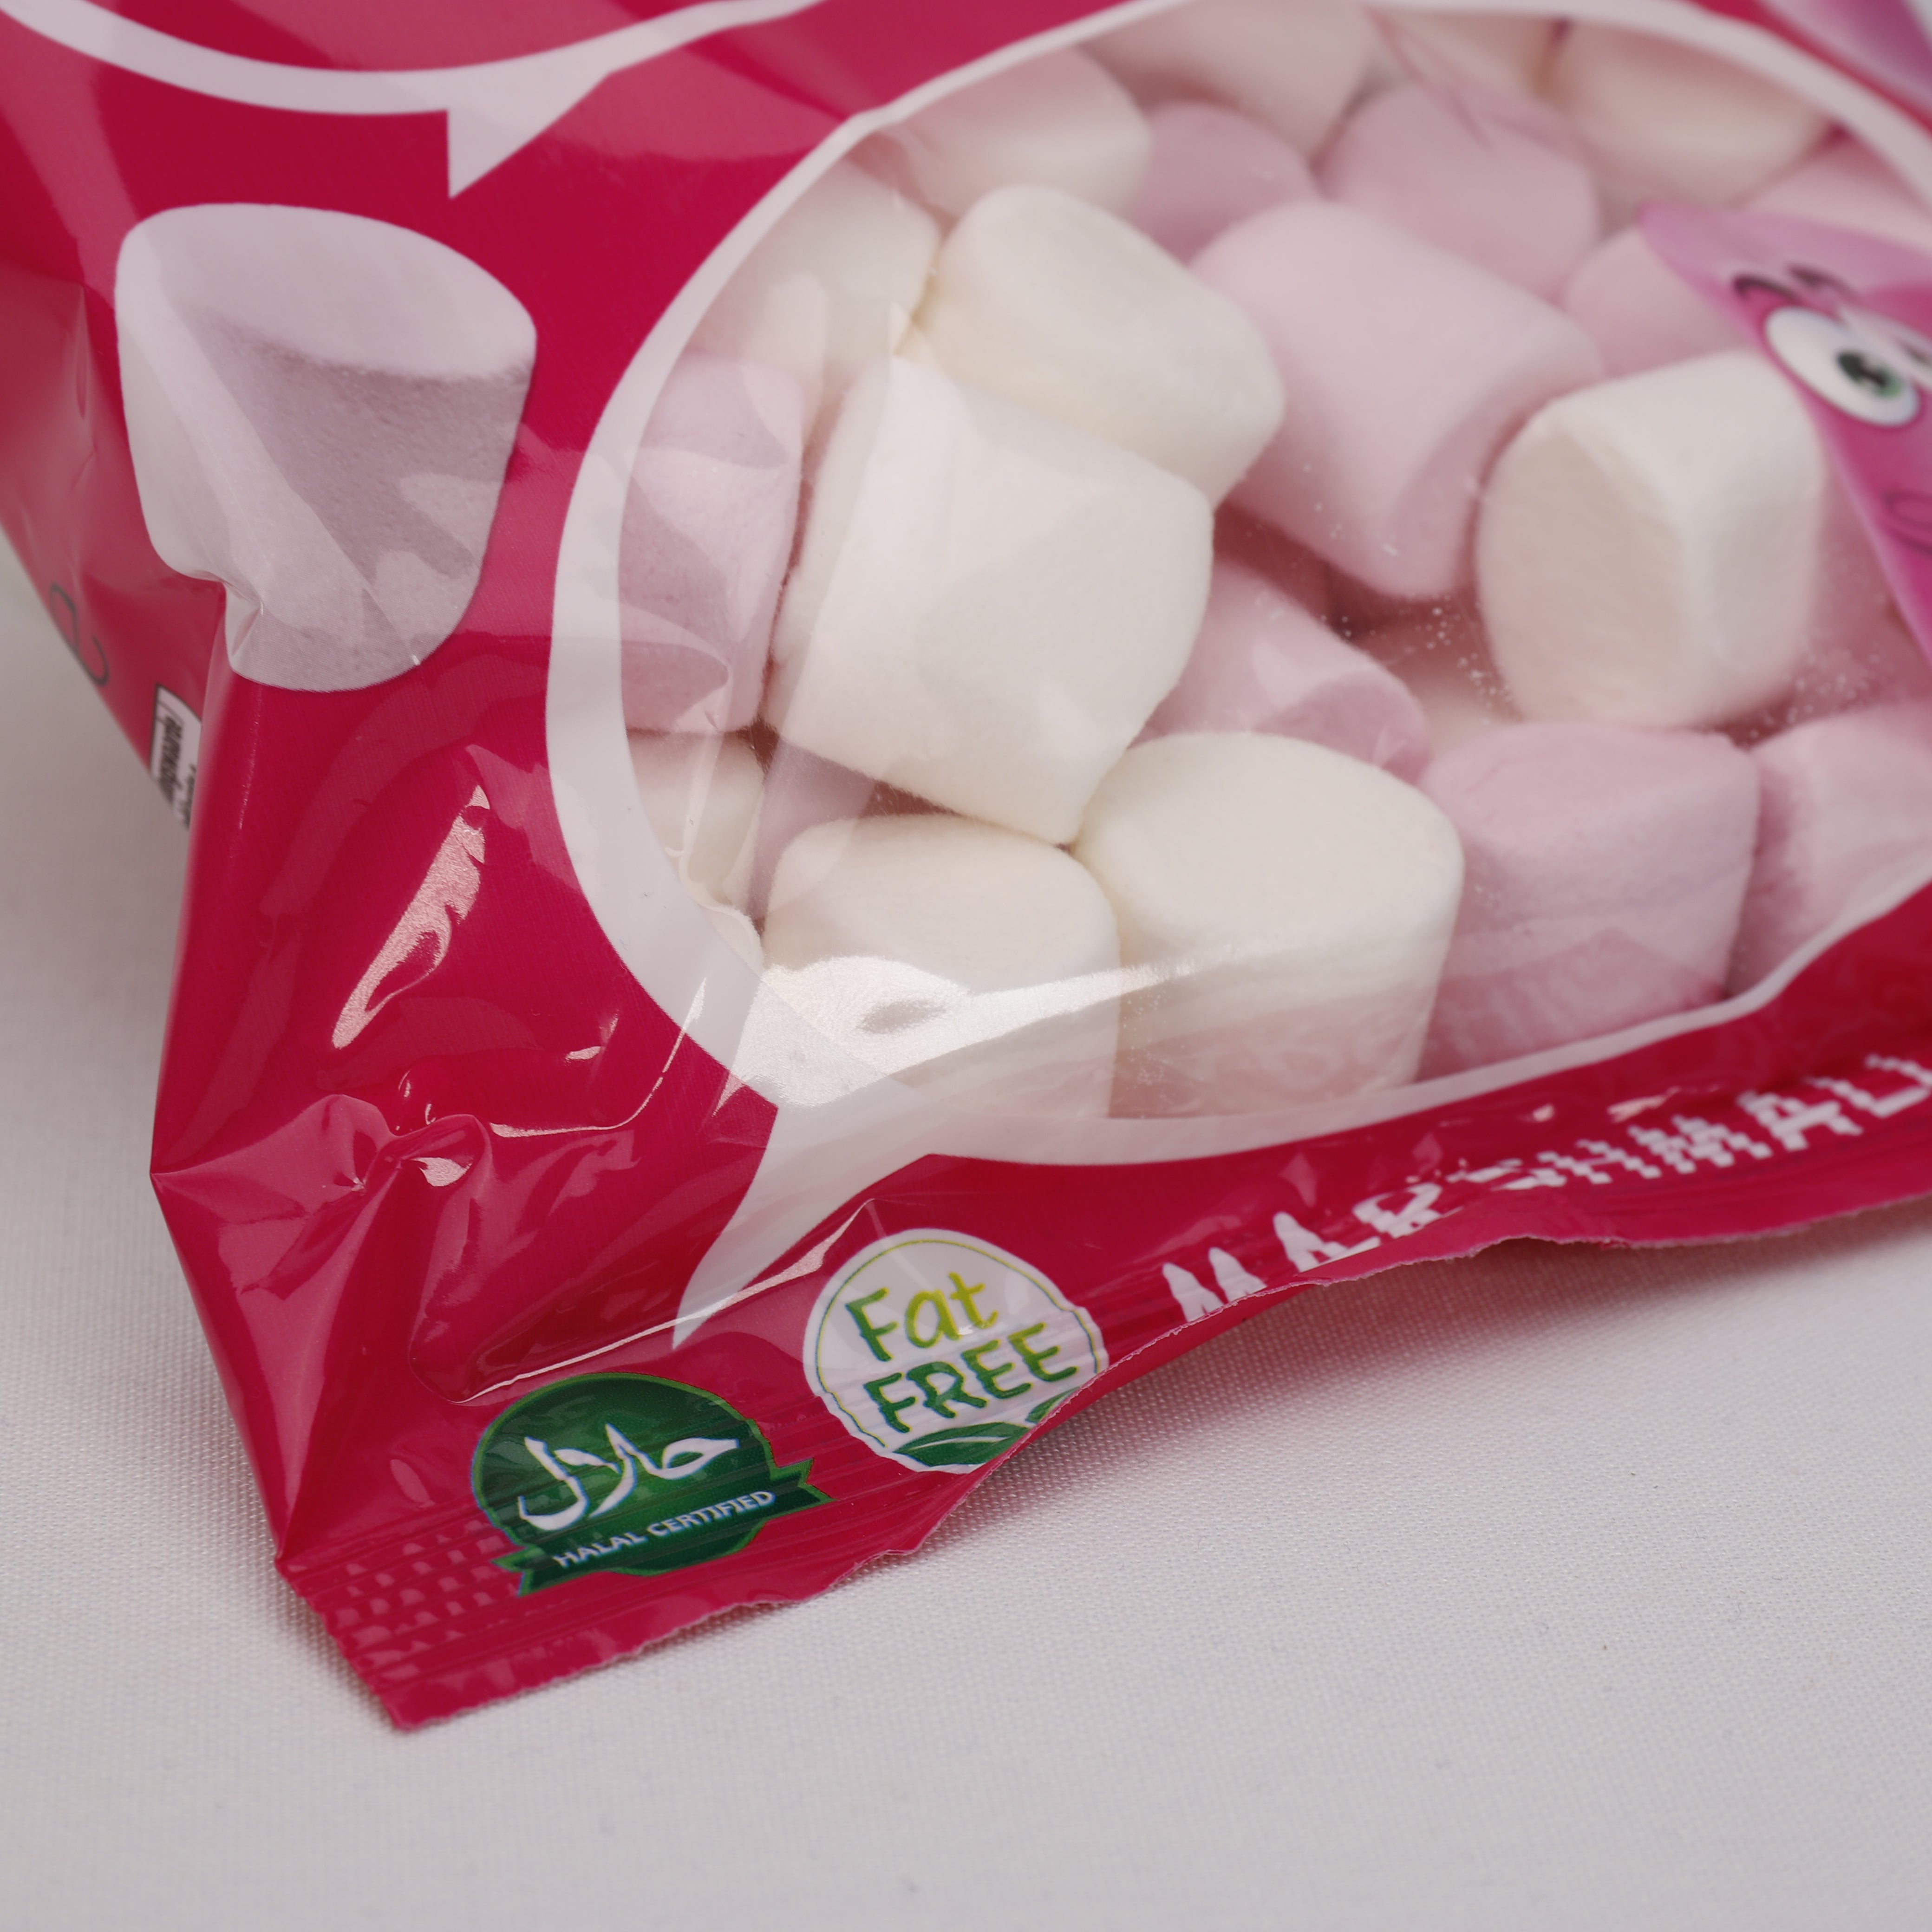 Bebeto Marshmallow, Pink & White, 135g, Süßigkeiten, Sweet, Halal, aus Türkei.